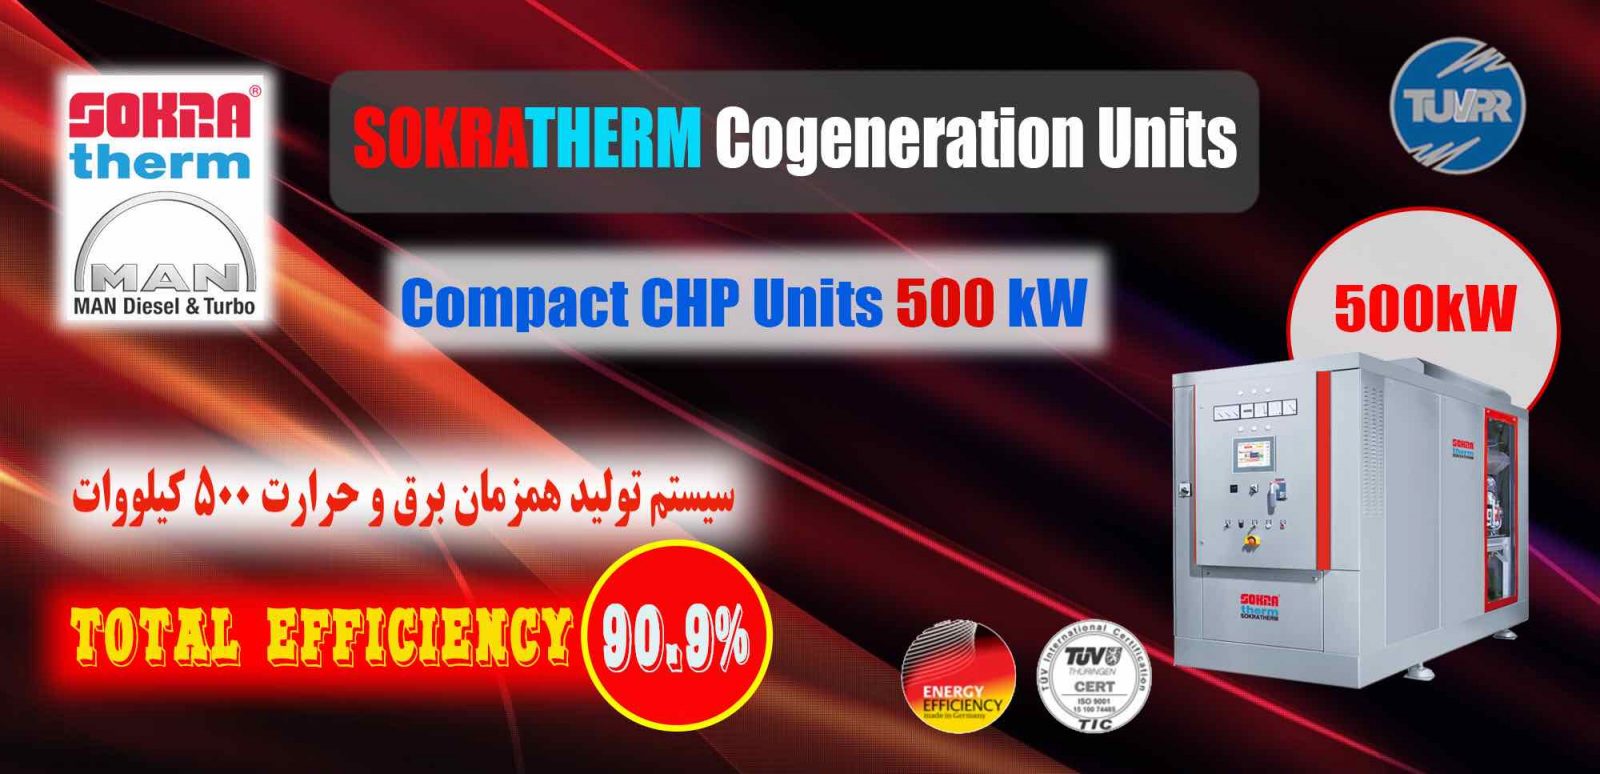 سیستم تولید همزمان برق و حرارت ۵۰۰ کیلووات آلمانی- شرکت پارس رایزن- 500 kW CHP combined head and power